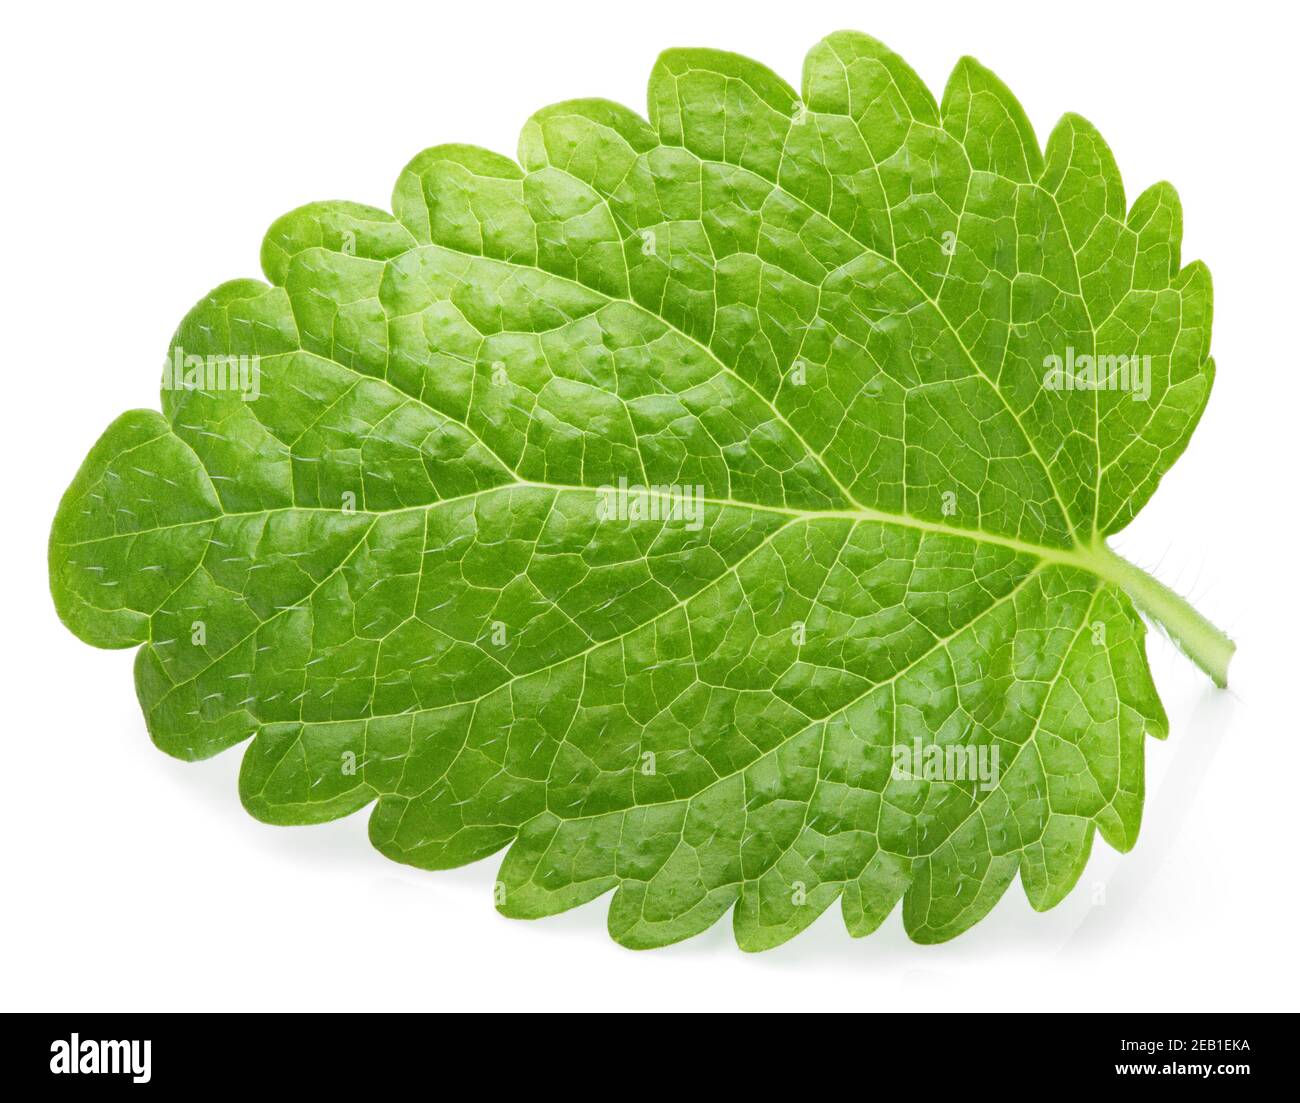 Foglia verde di balsamo di limone (Melissa officinalis), balsamo, balsamo comune, o foglia di menta balsamo isolato su sfondo bianco Foto Stock